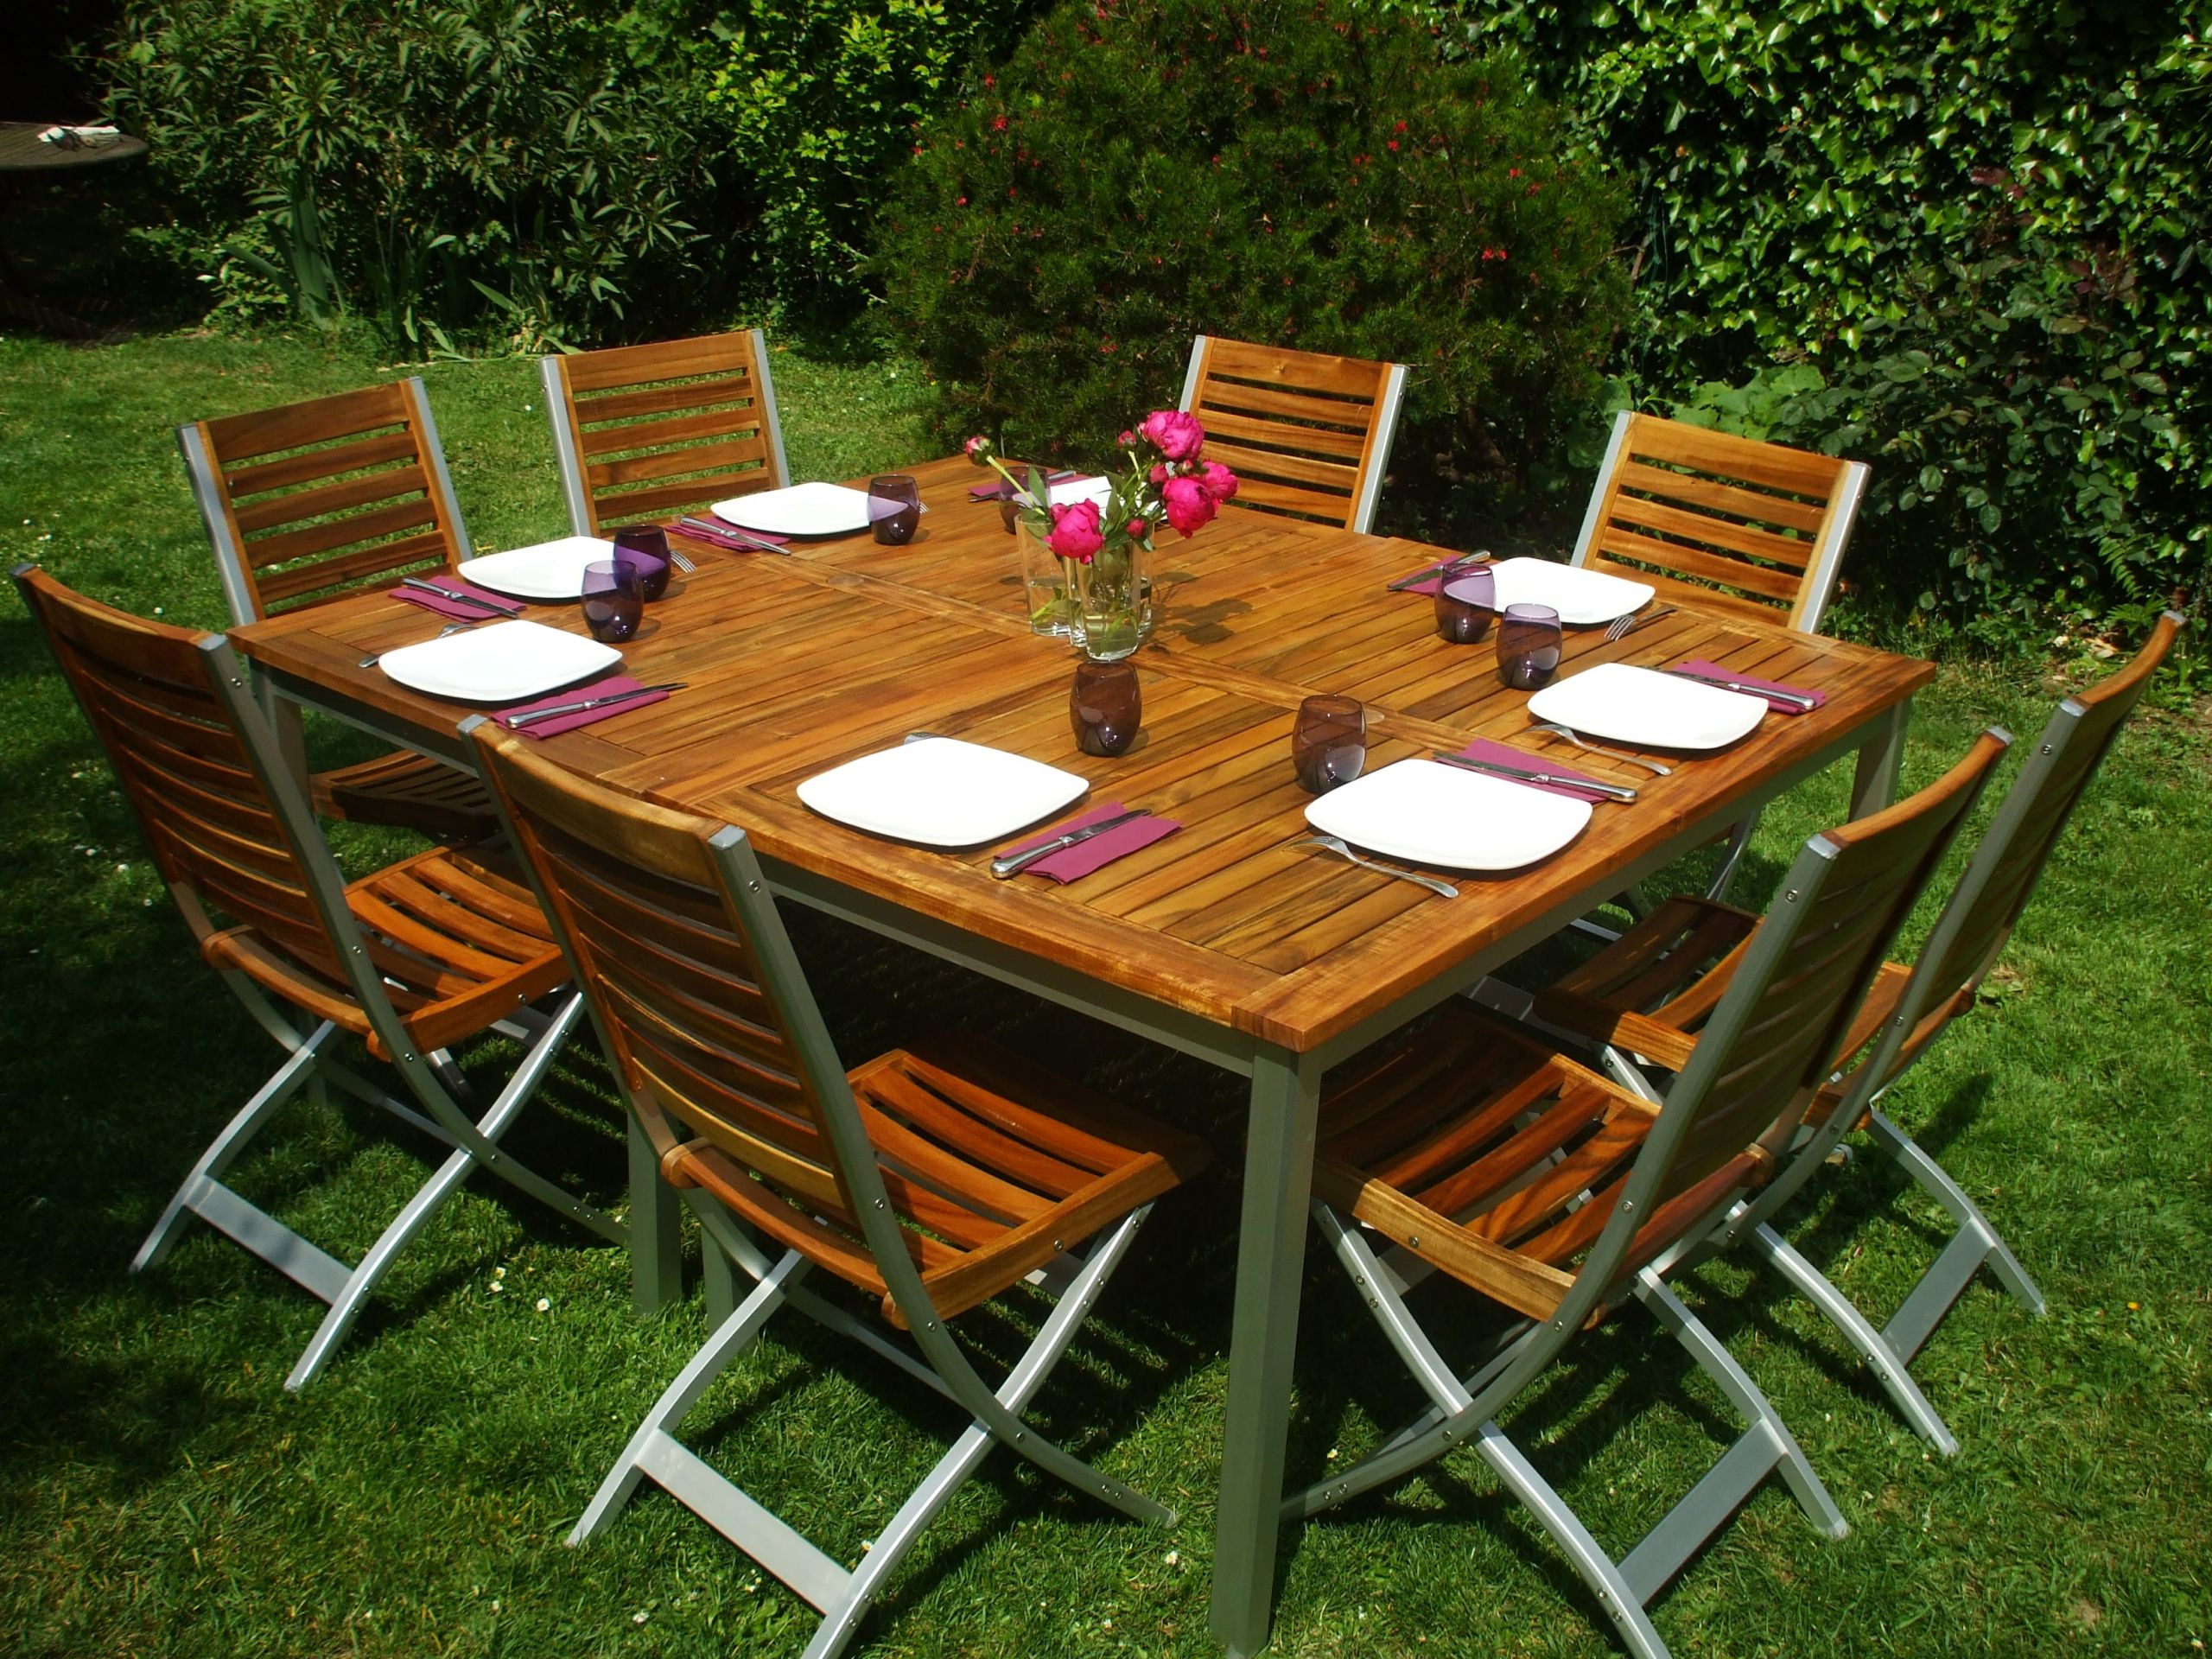 table picnic bois brico depot avec best de jardin en contemporary amazing house idees et salon beau fabriquer son qaland of jard within lames lame